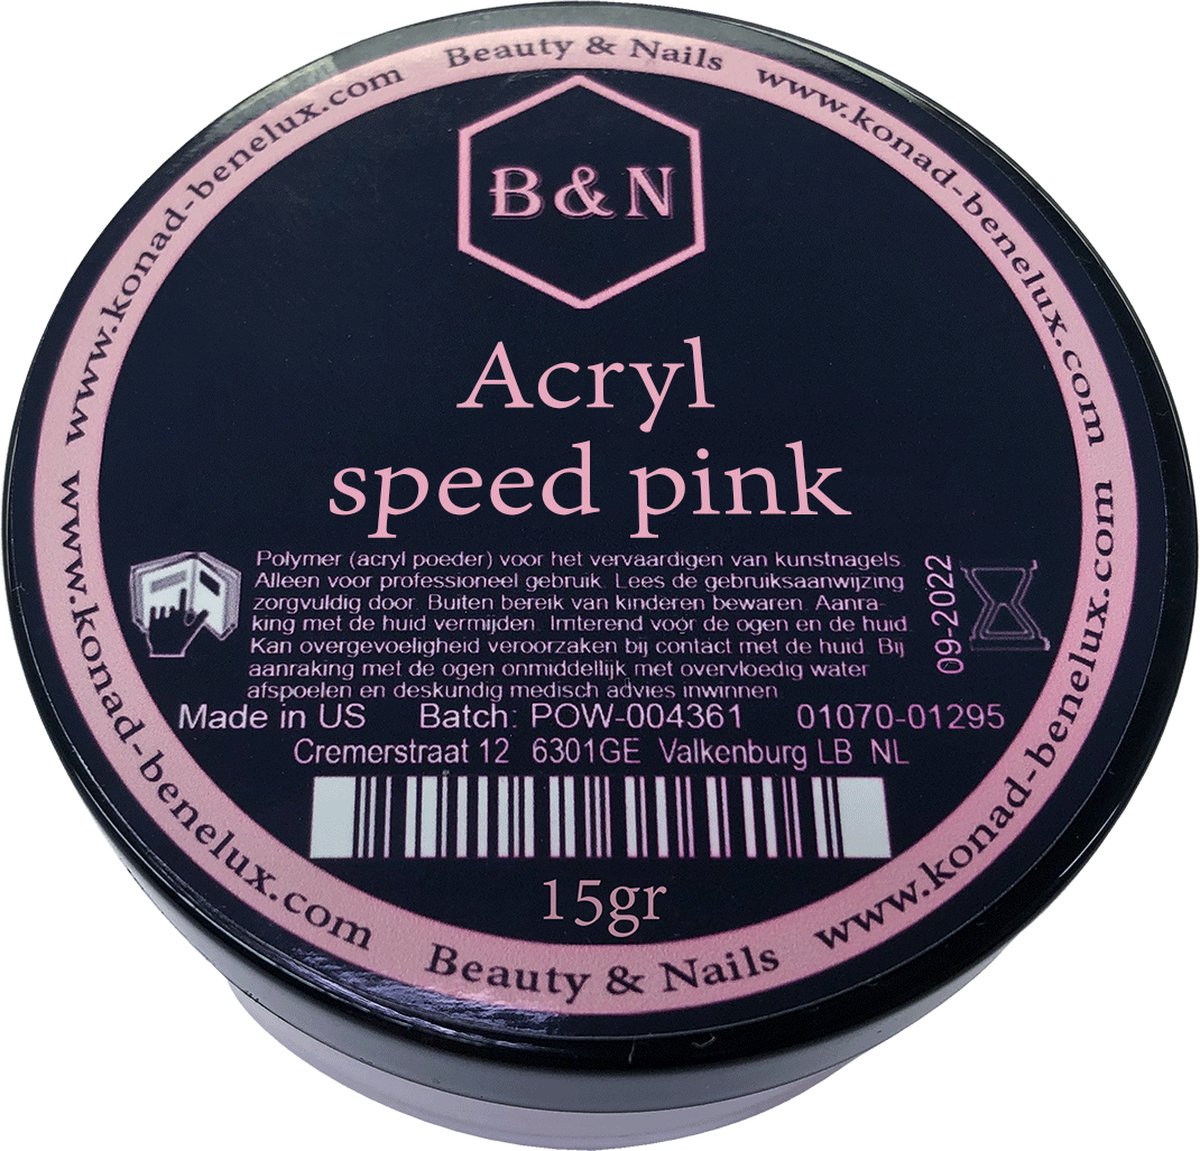 Acryl - speed pink - 15 gr | B&N - acrylpoeder - VEGAN - acrylpoeder